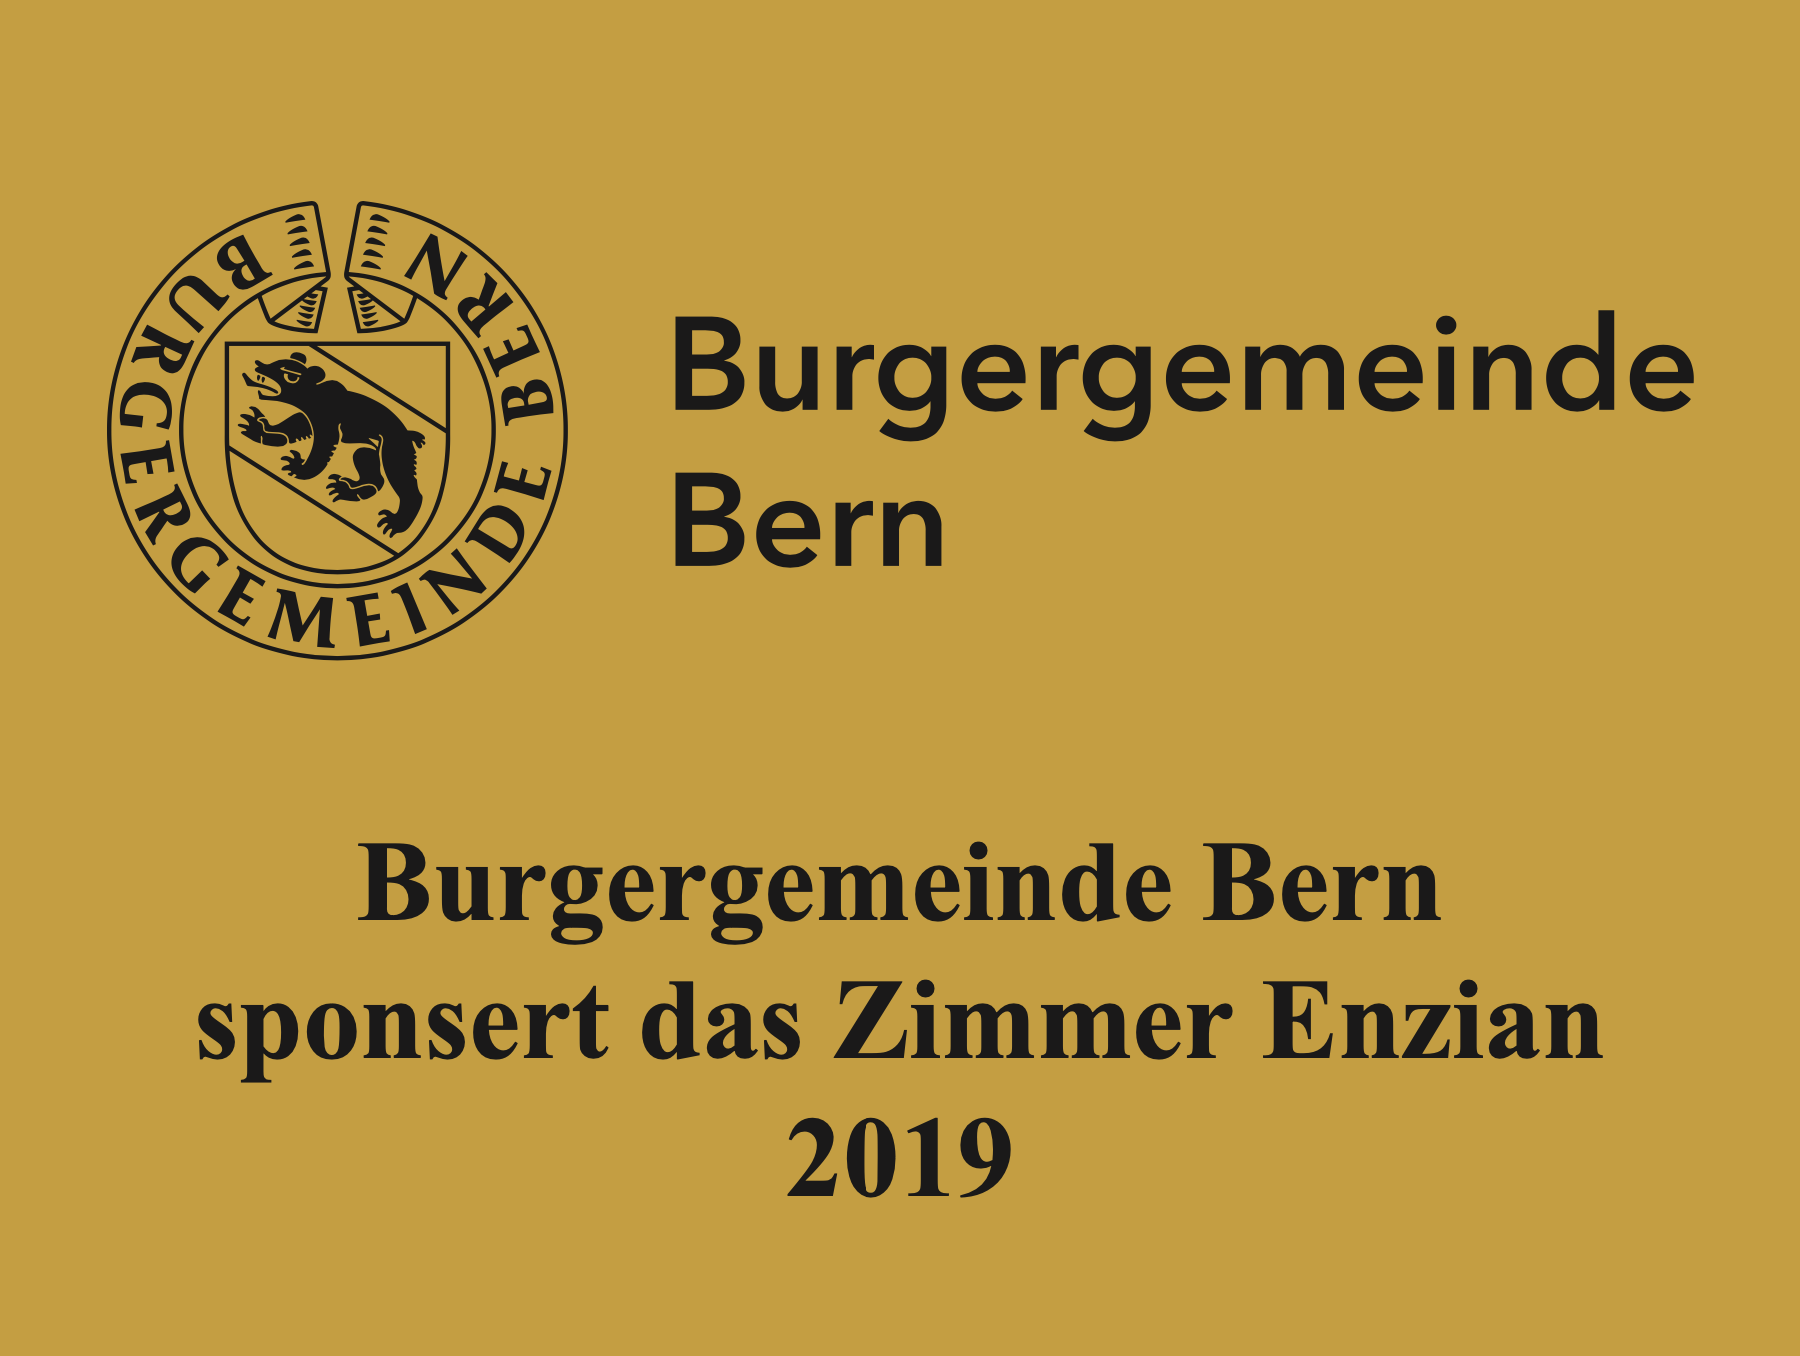 Zimmerpatenschaft der Burgergemeinde Bern